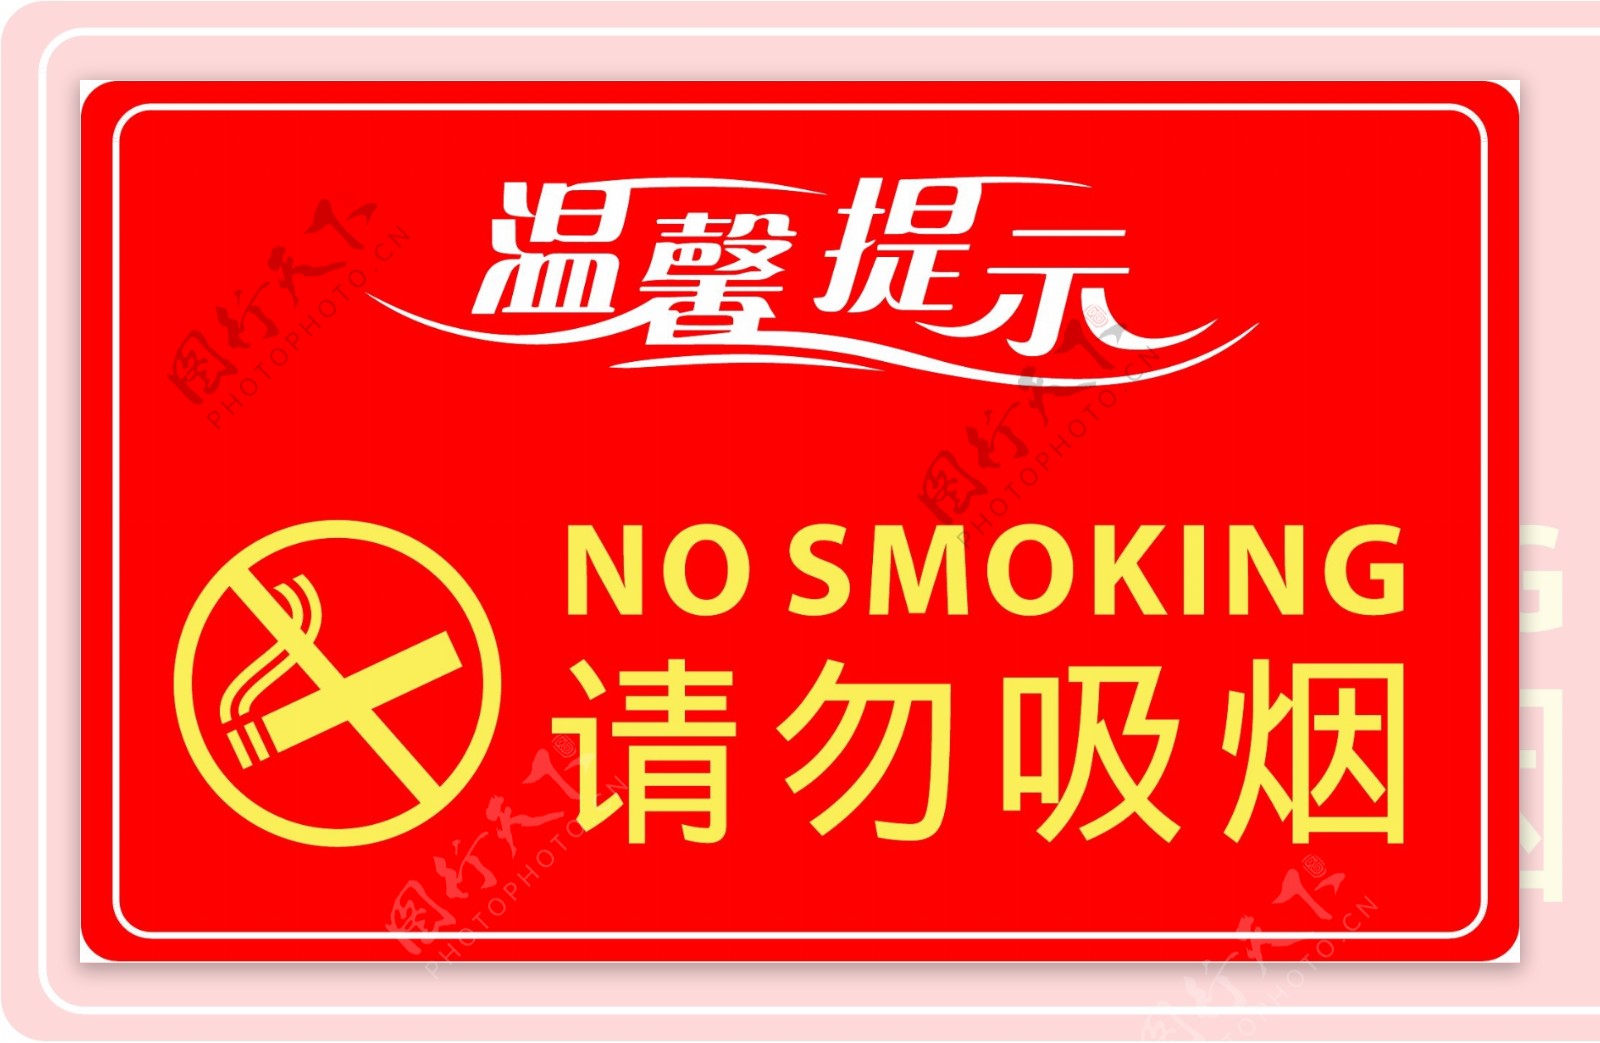 温馨提示请勿吸烟